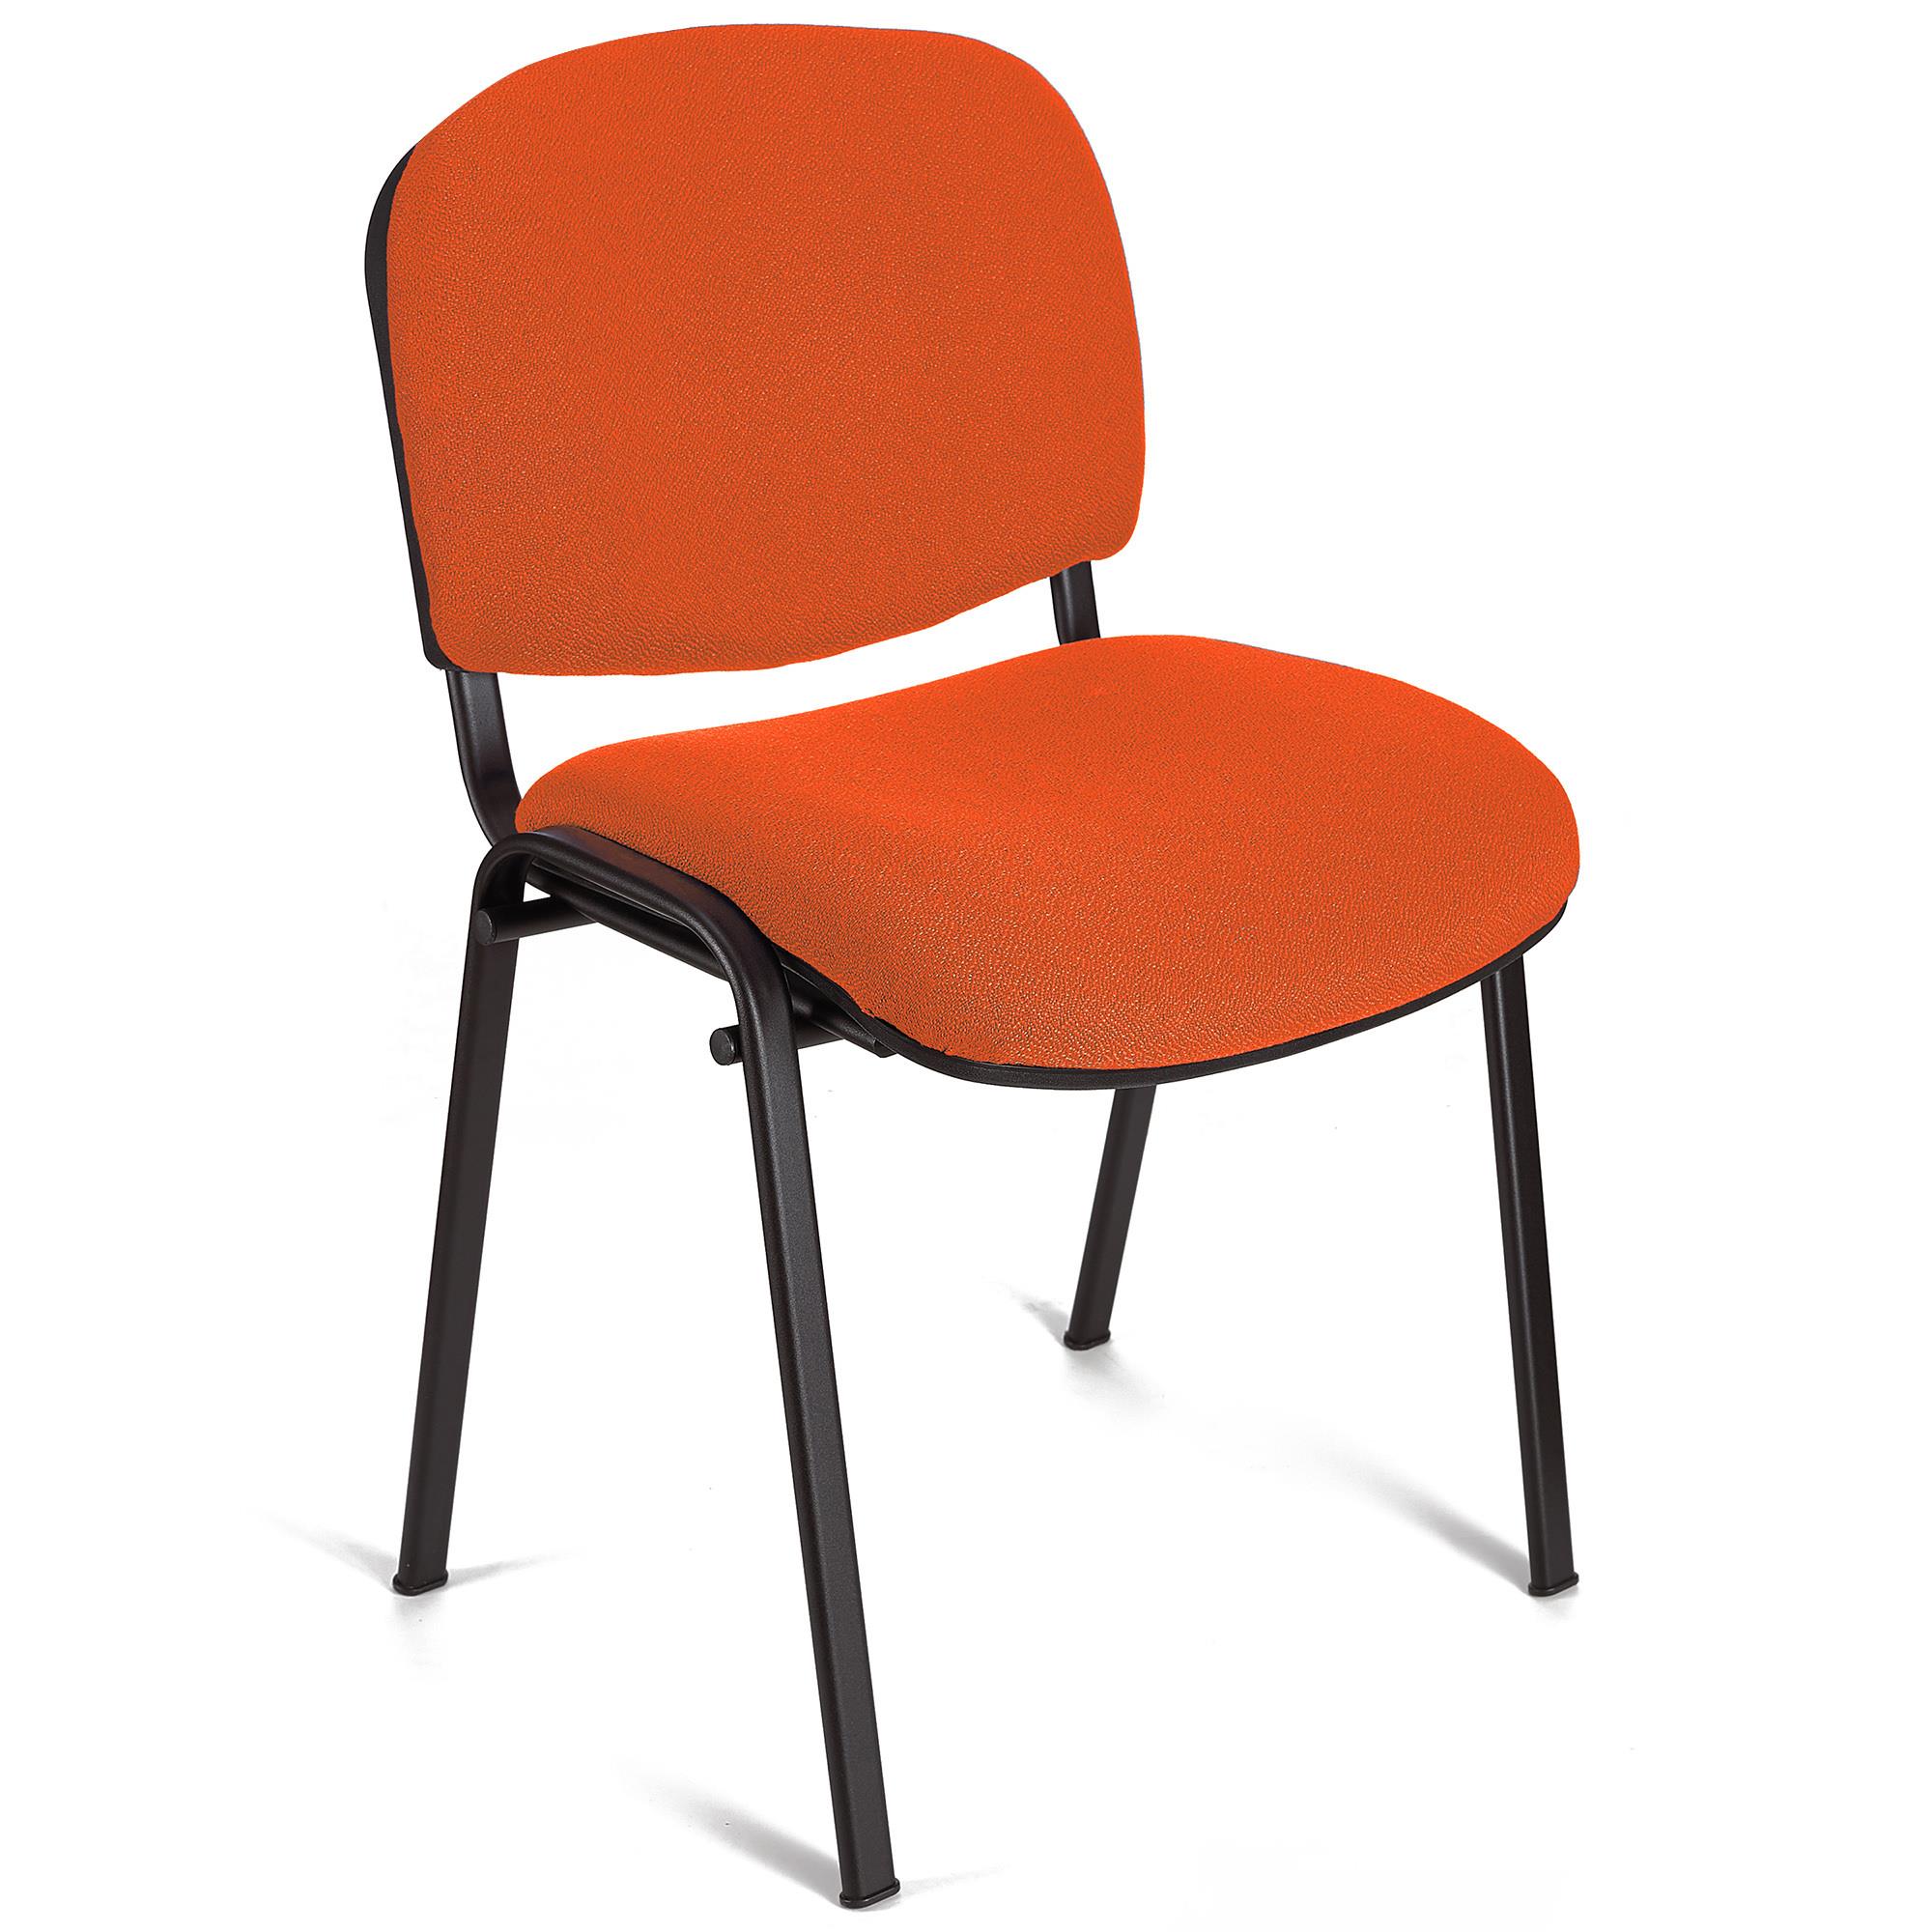 Konferenzstuhl MOBY BASE, bequem und praktisch, stapelbar, Farbe Orange